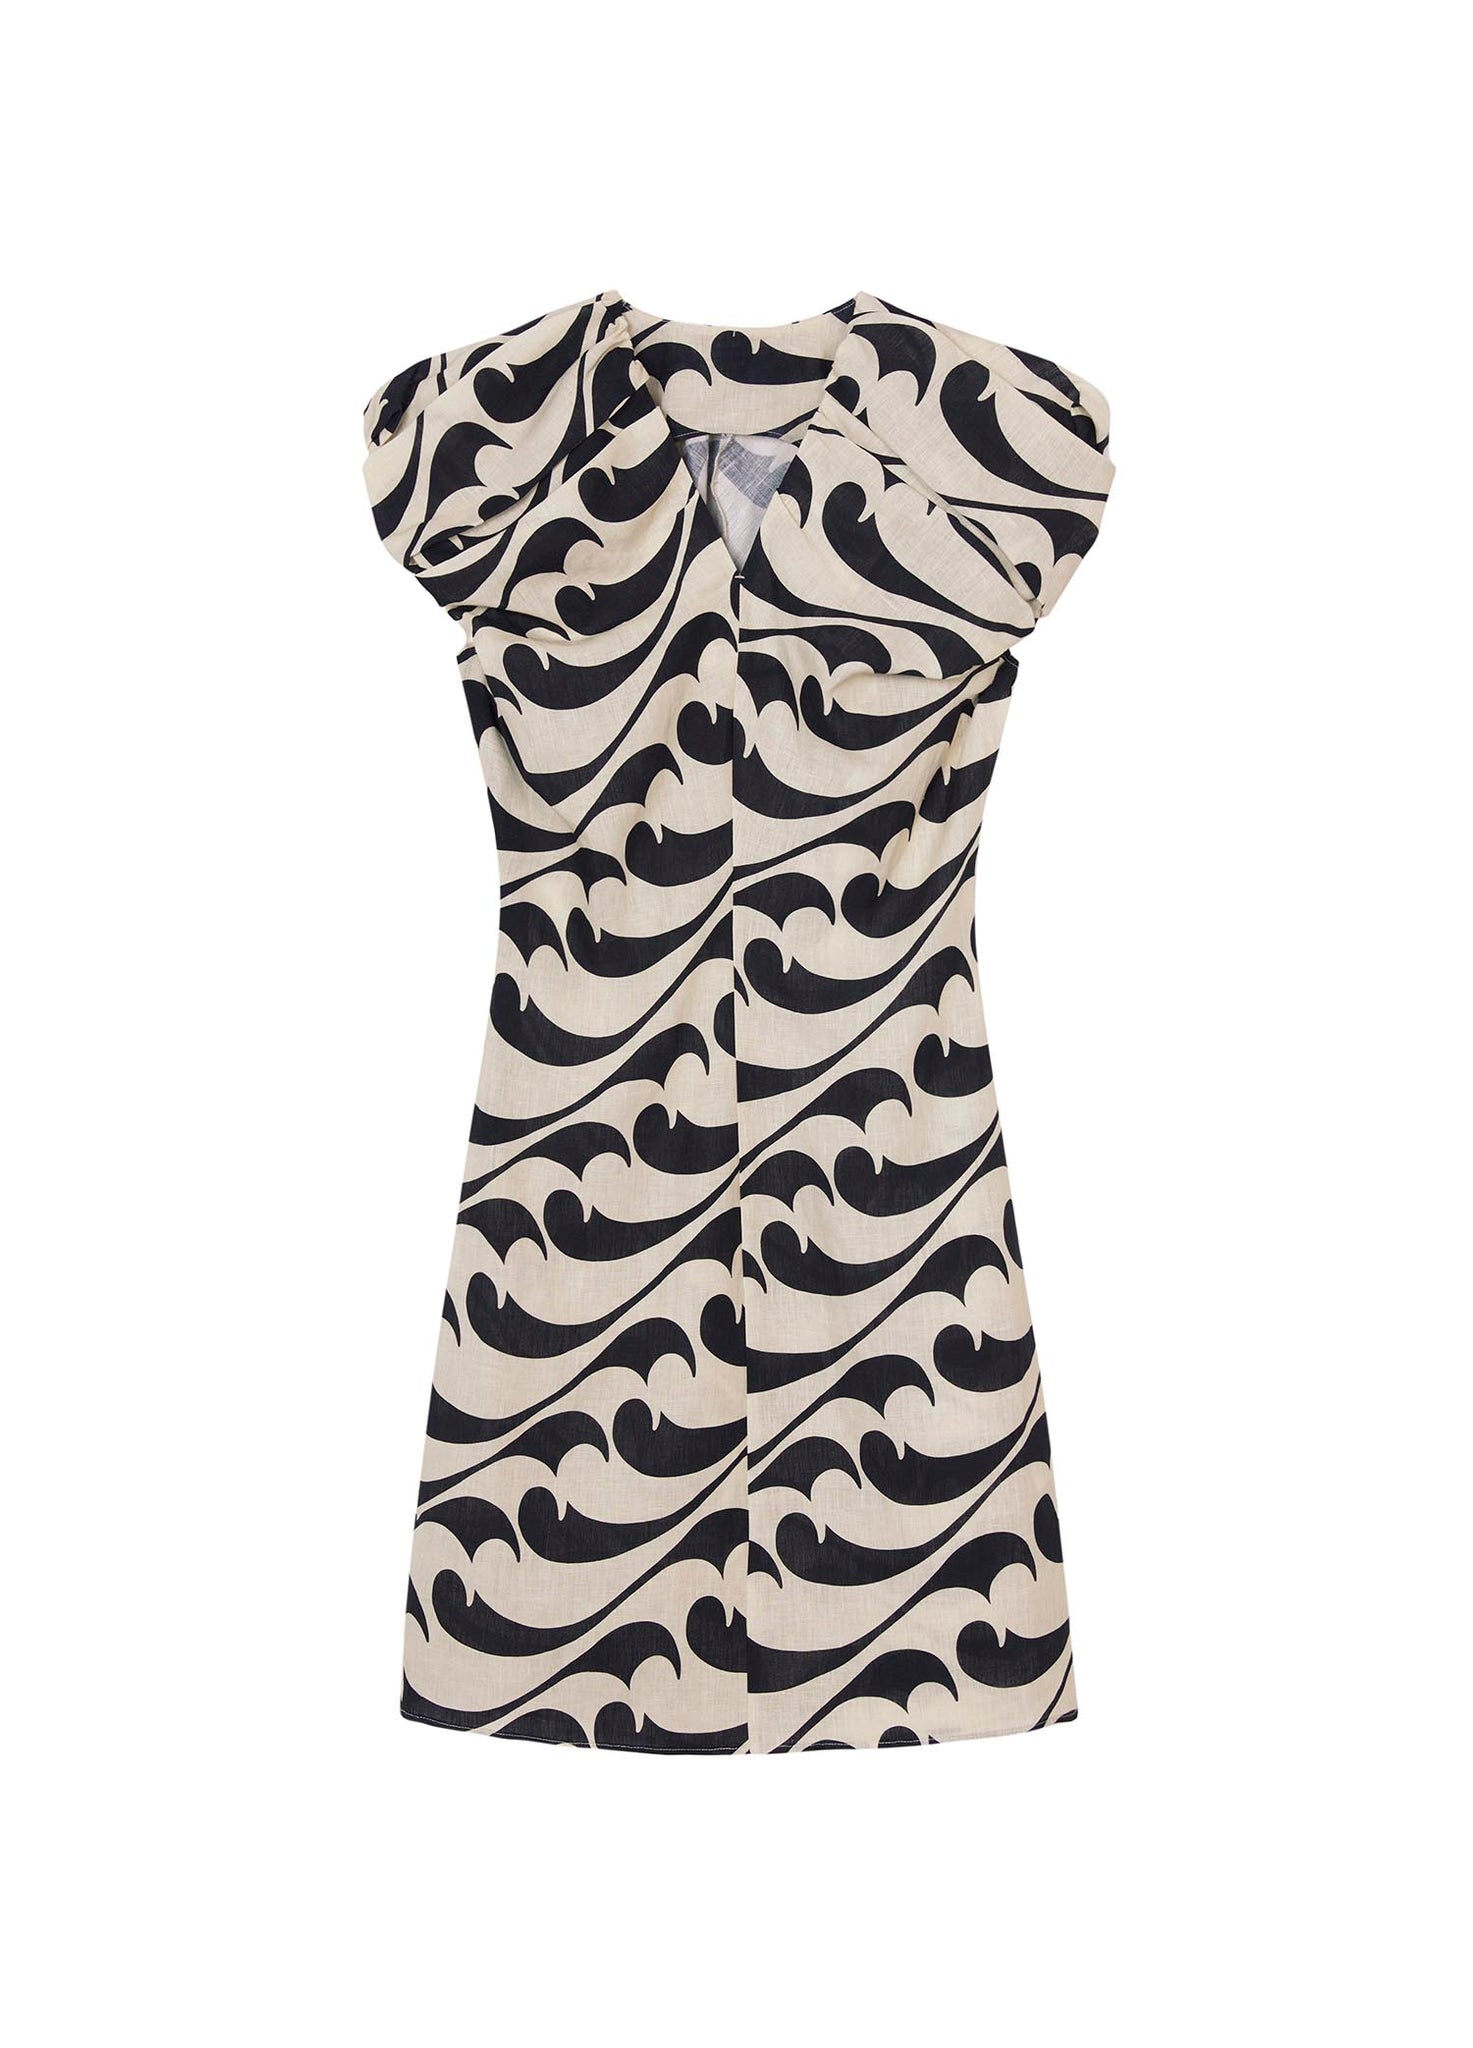 Dresses / JNBY Full Print Sleeveless Dress (Linen 100%)